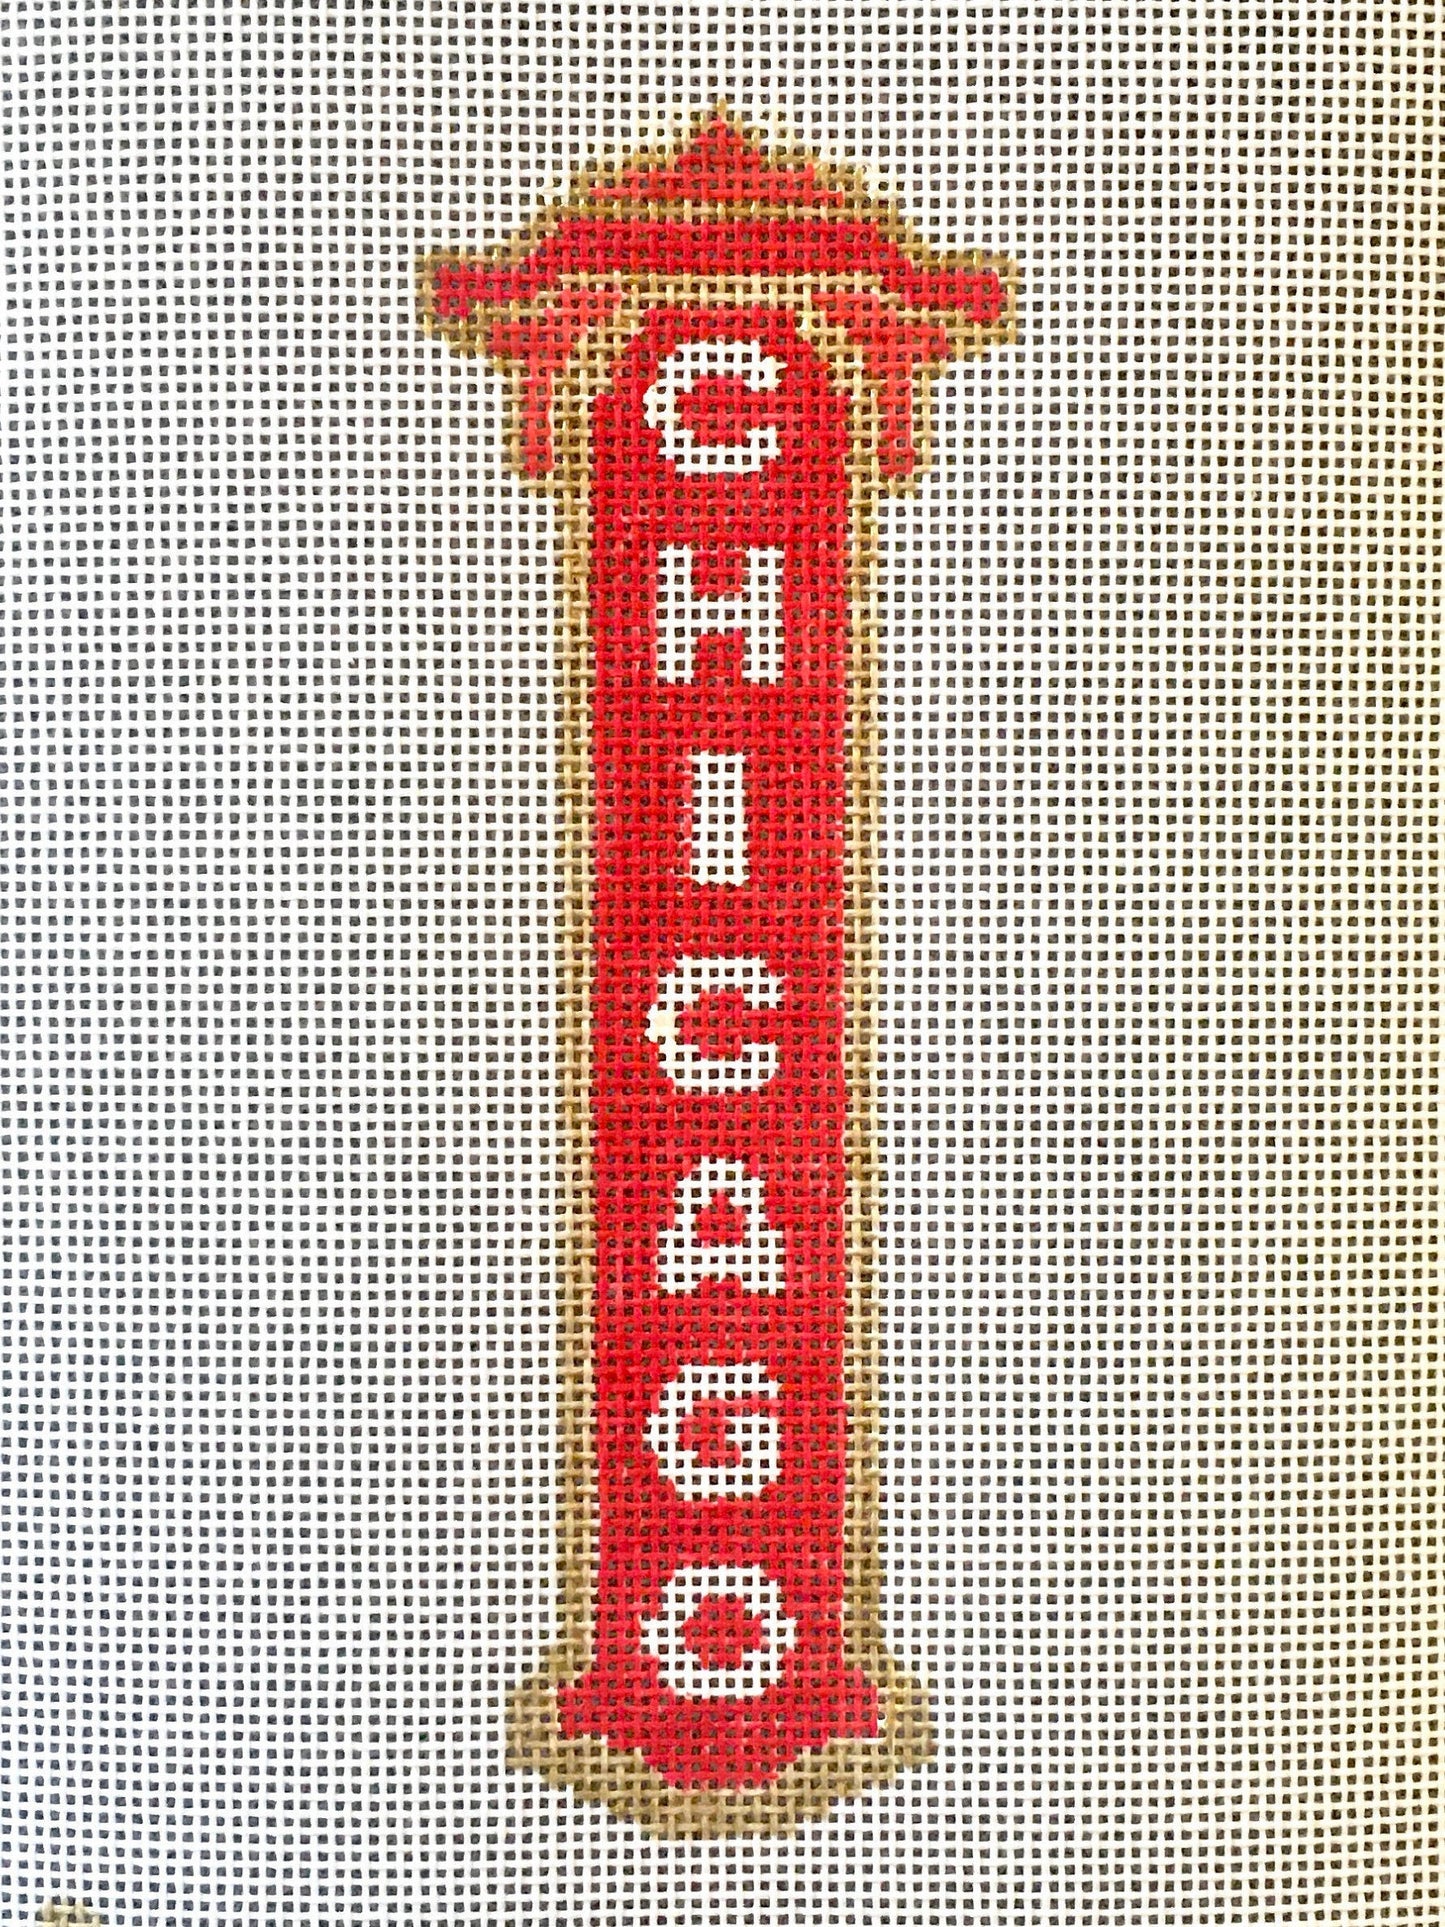 Chicago Theatre Sign